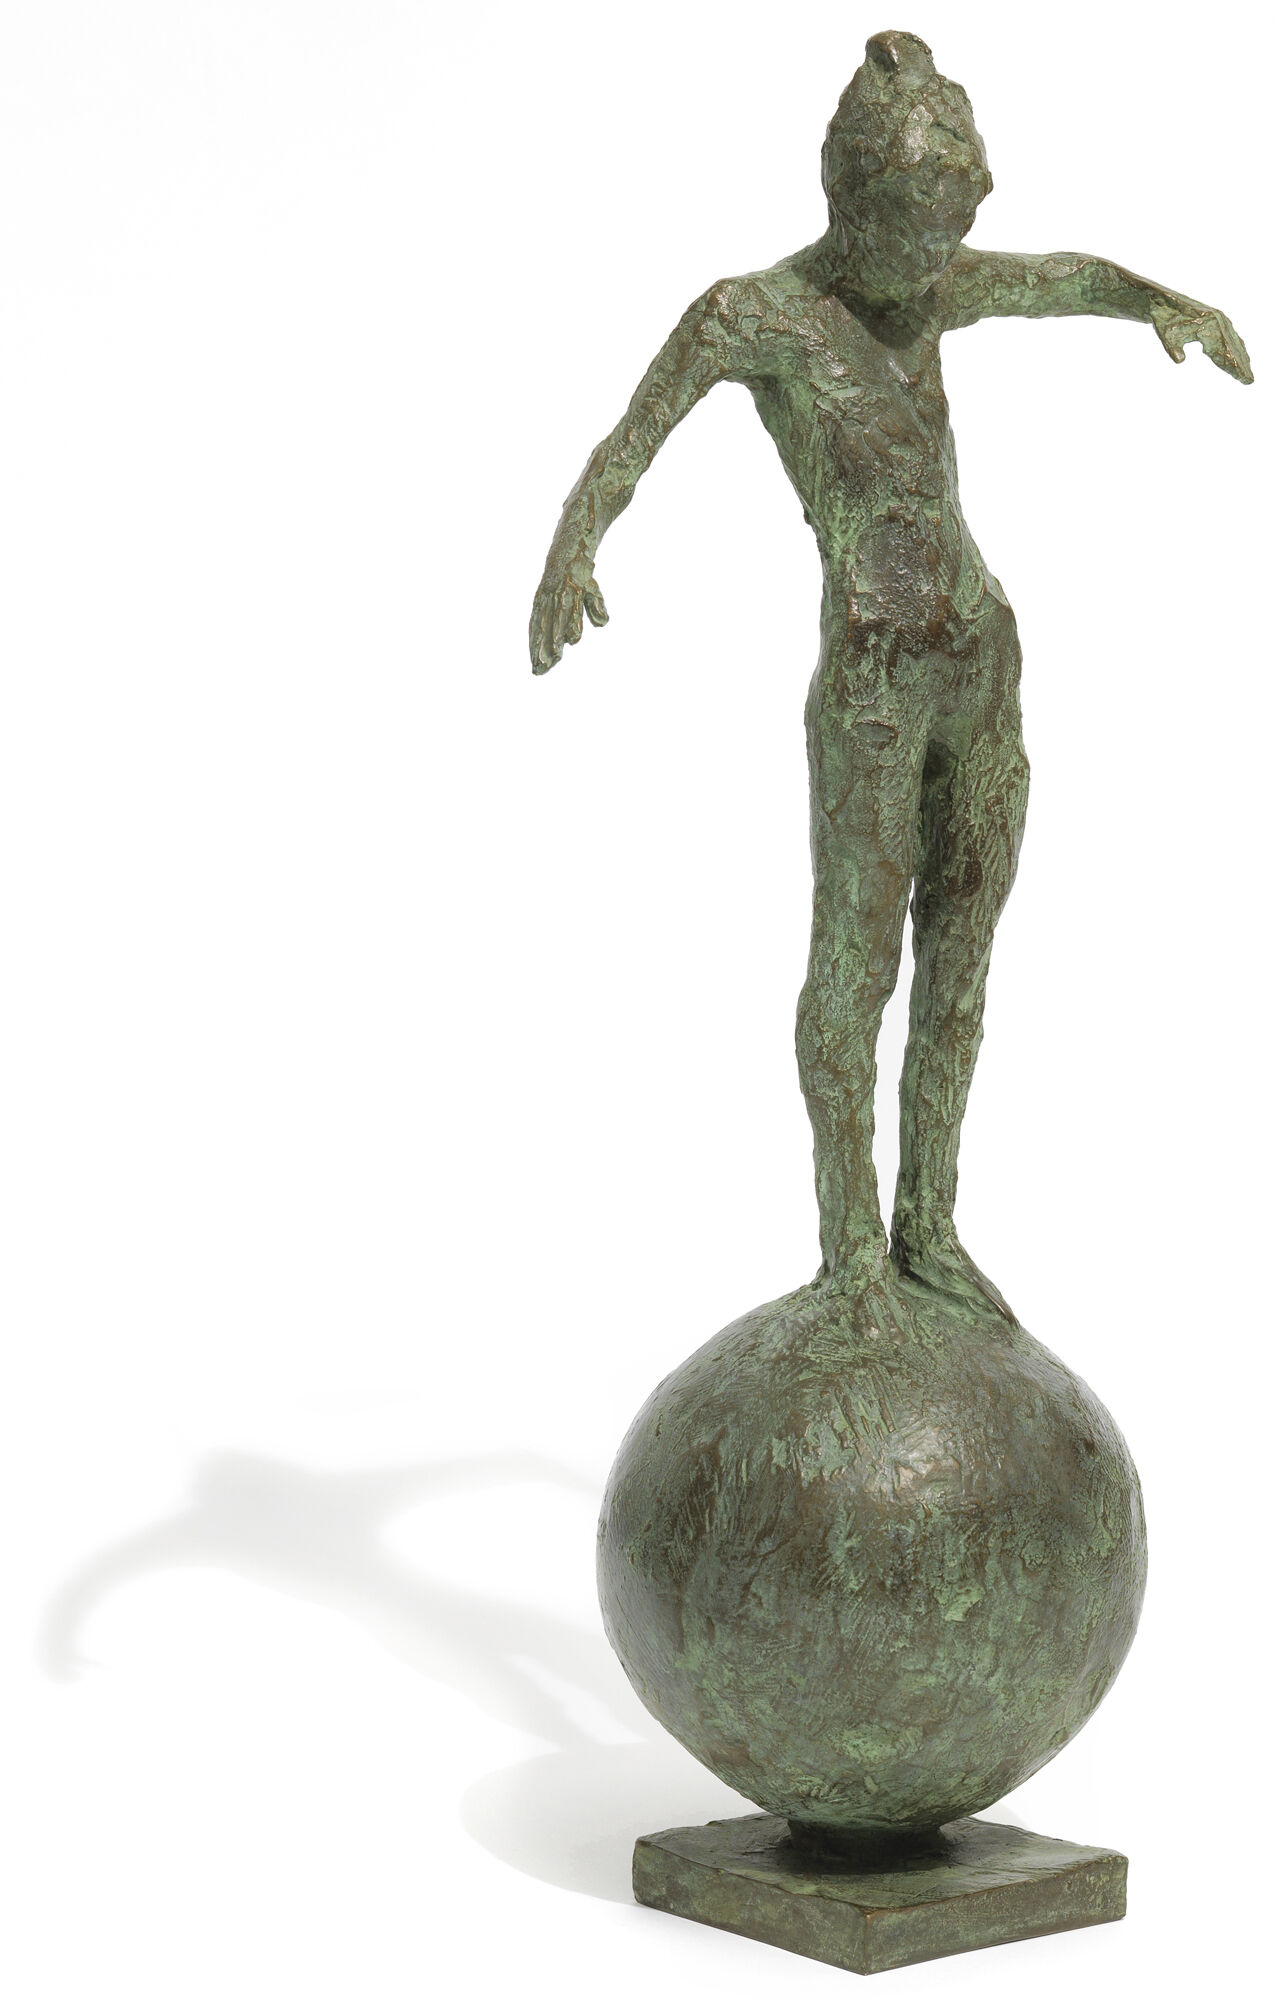 Skulptur "Kleine Balance" (2016), Bronze von Thomas Jastram